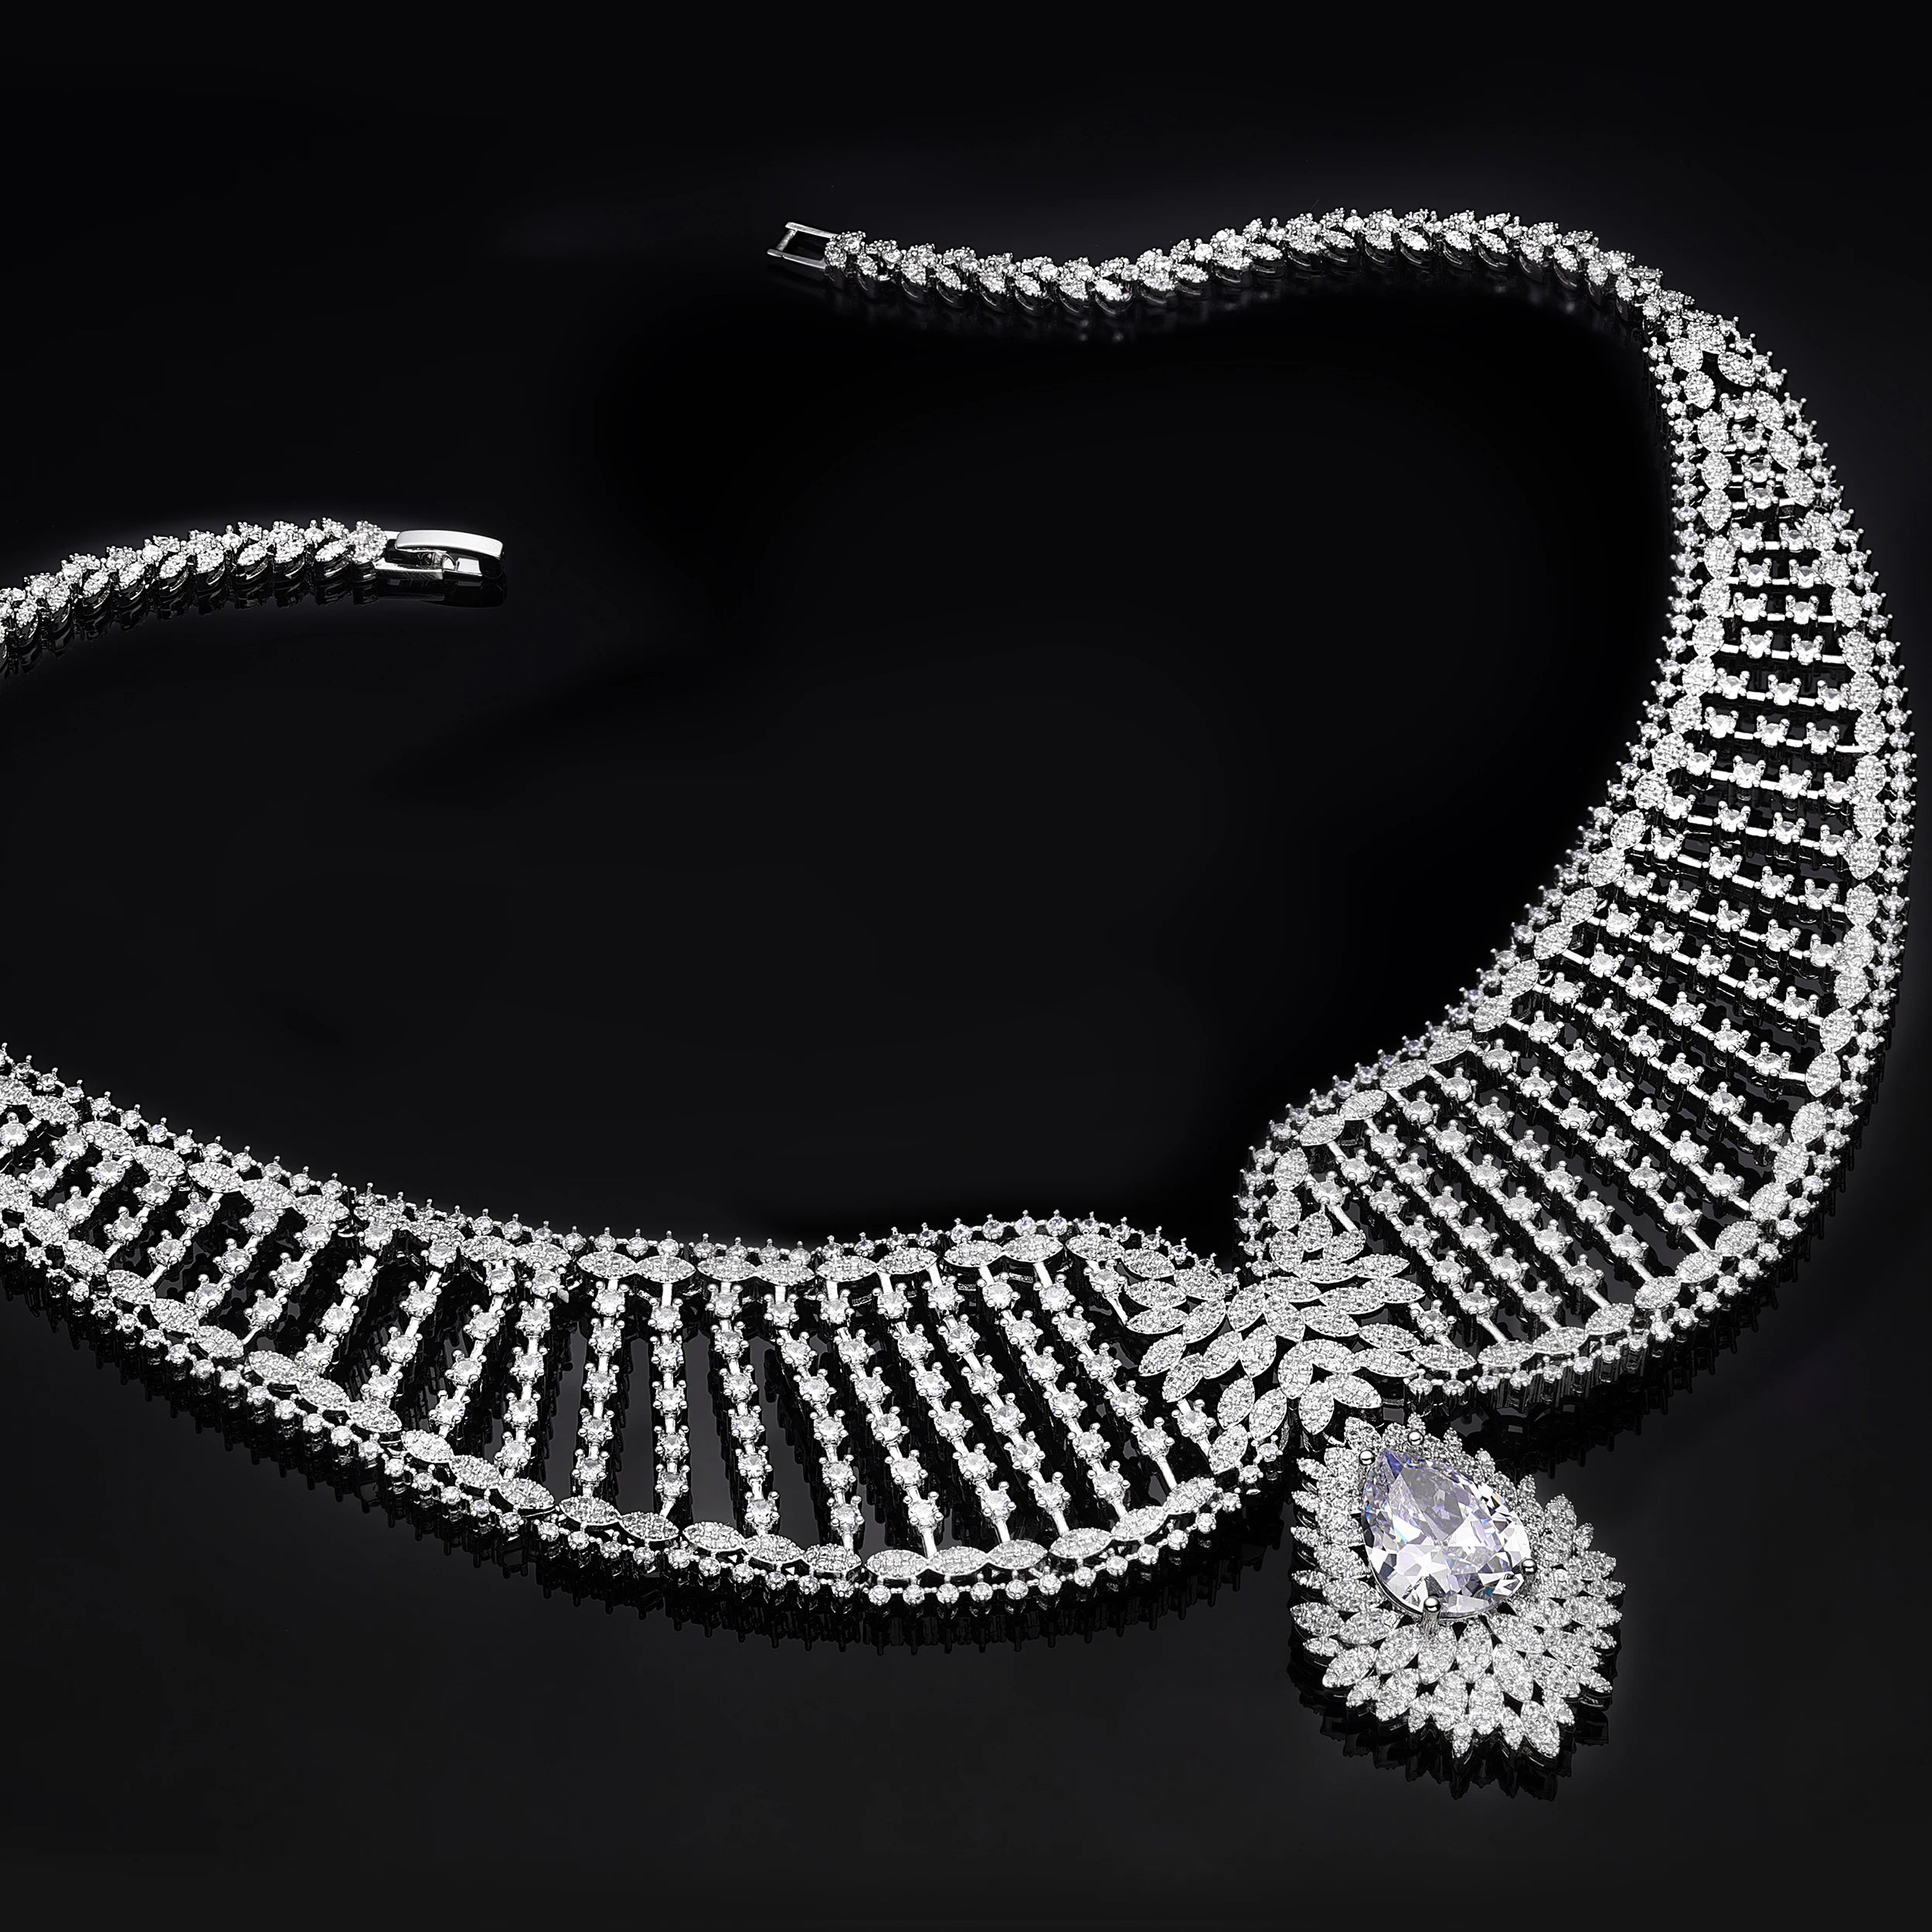 4-Piece Jewelry Set Angel Design Bride Necklace Earring Set AAA Cubic Zirconia Women's Wedding Accessories